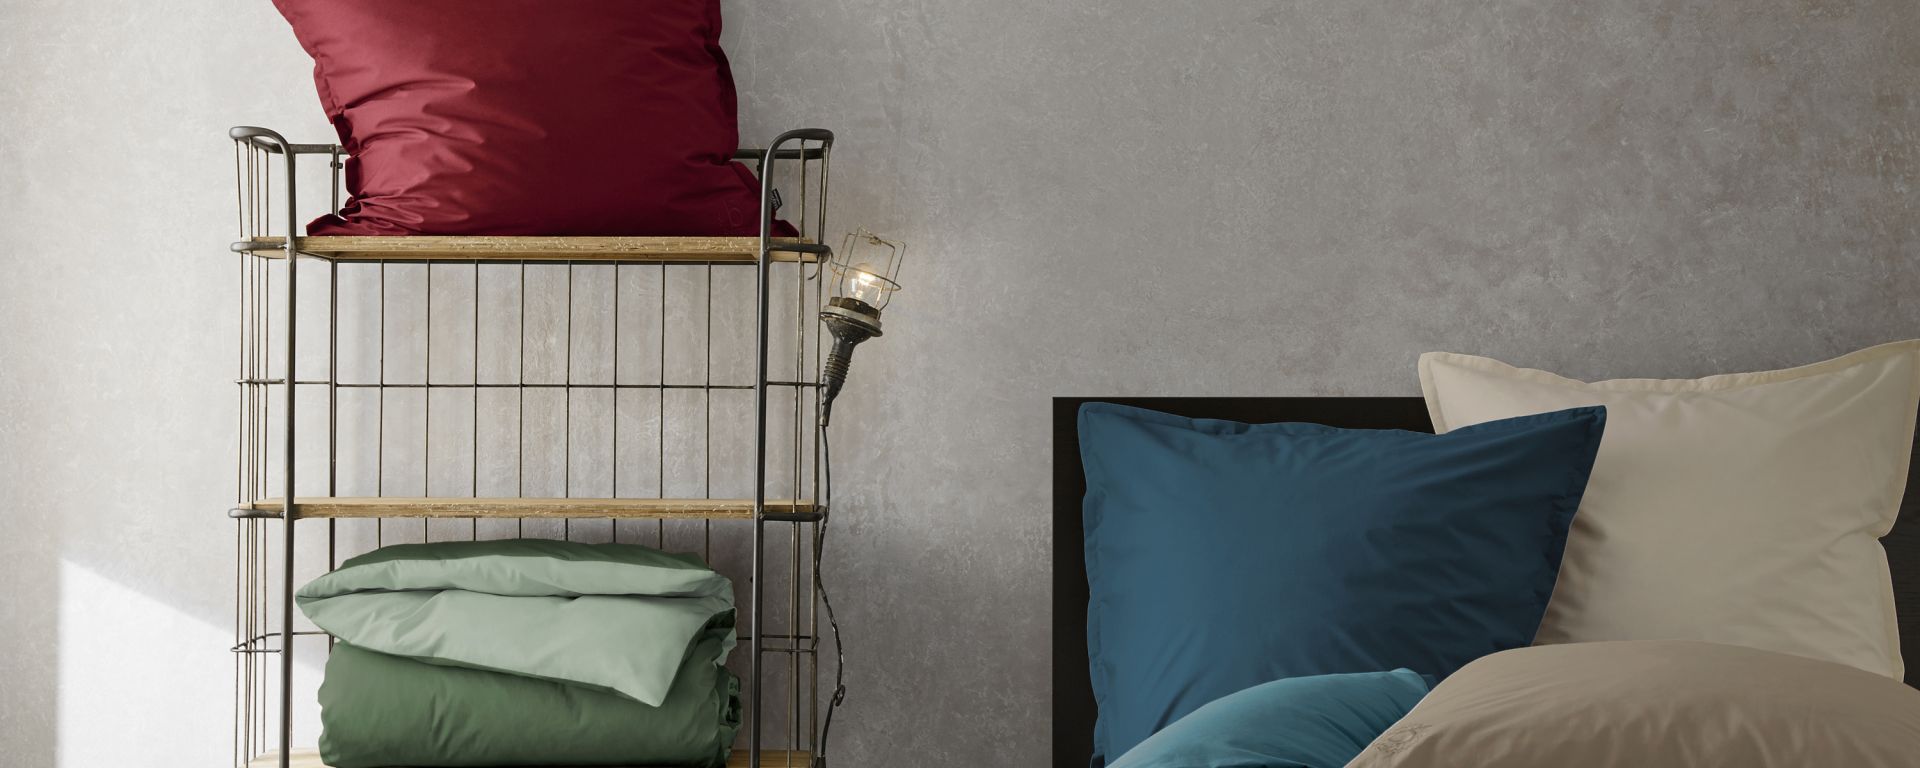 Ibena Jacquard-Decke BARNSLEY 55960216 beige/grau in 150x200cm | Farbe